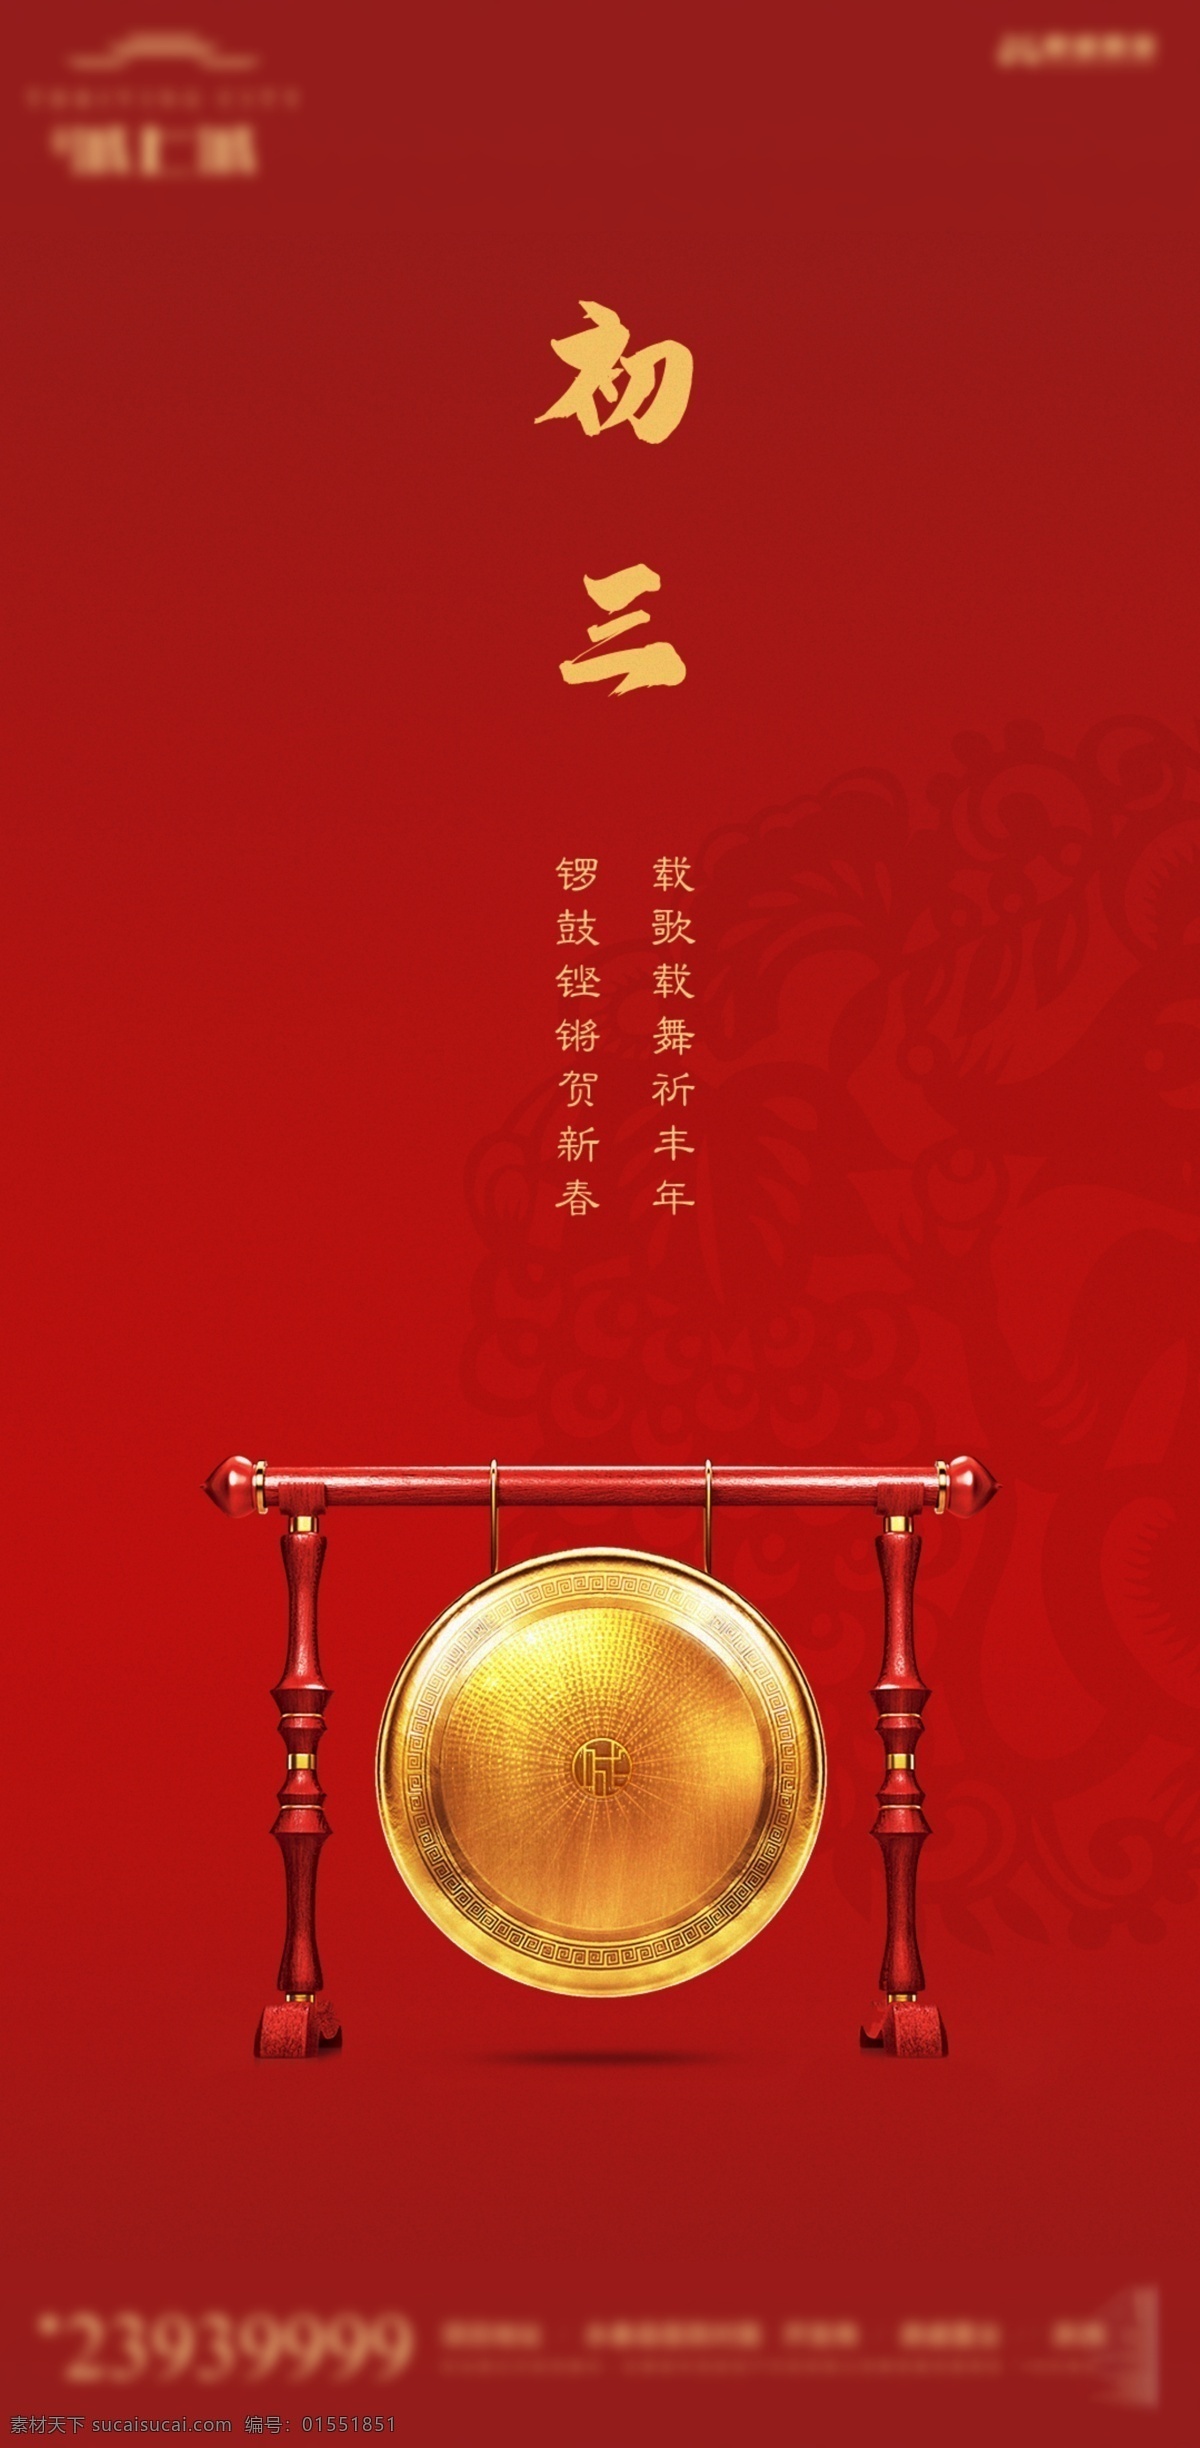 春节系列 初三 春节 新年 红色背景 大年初三 节气 分层